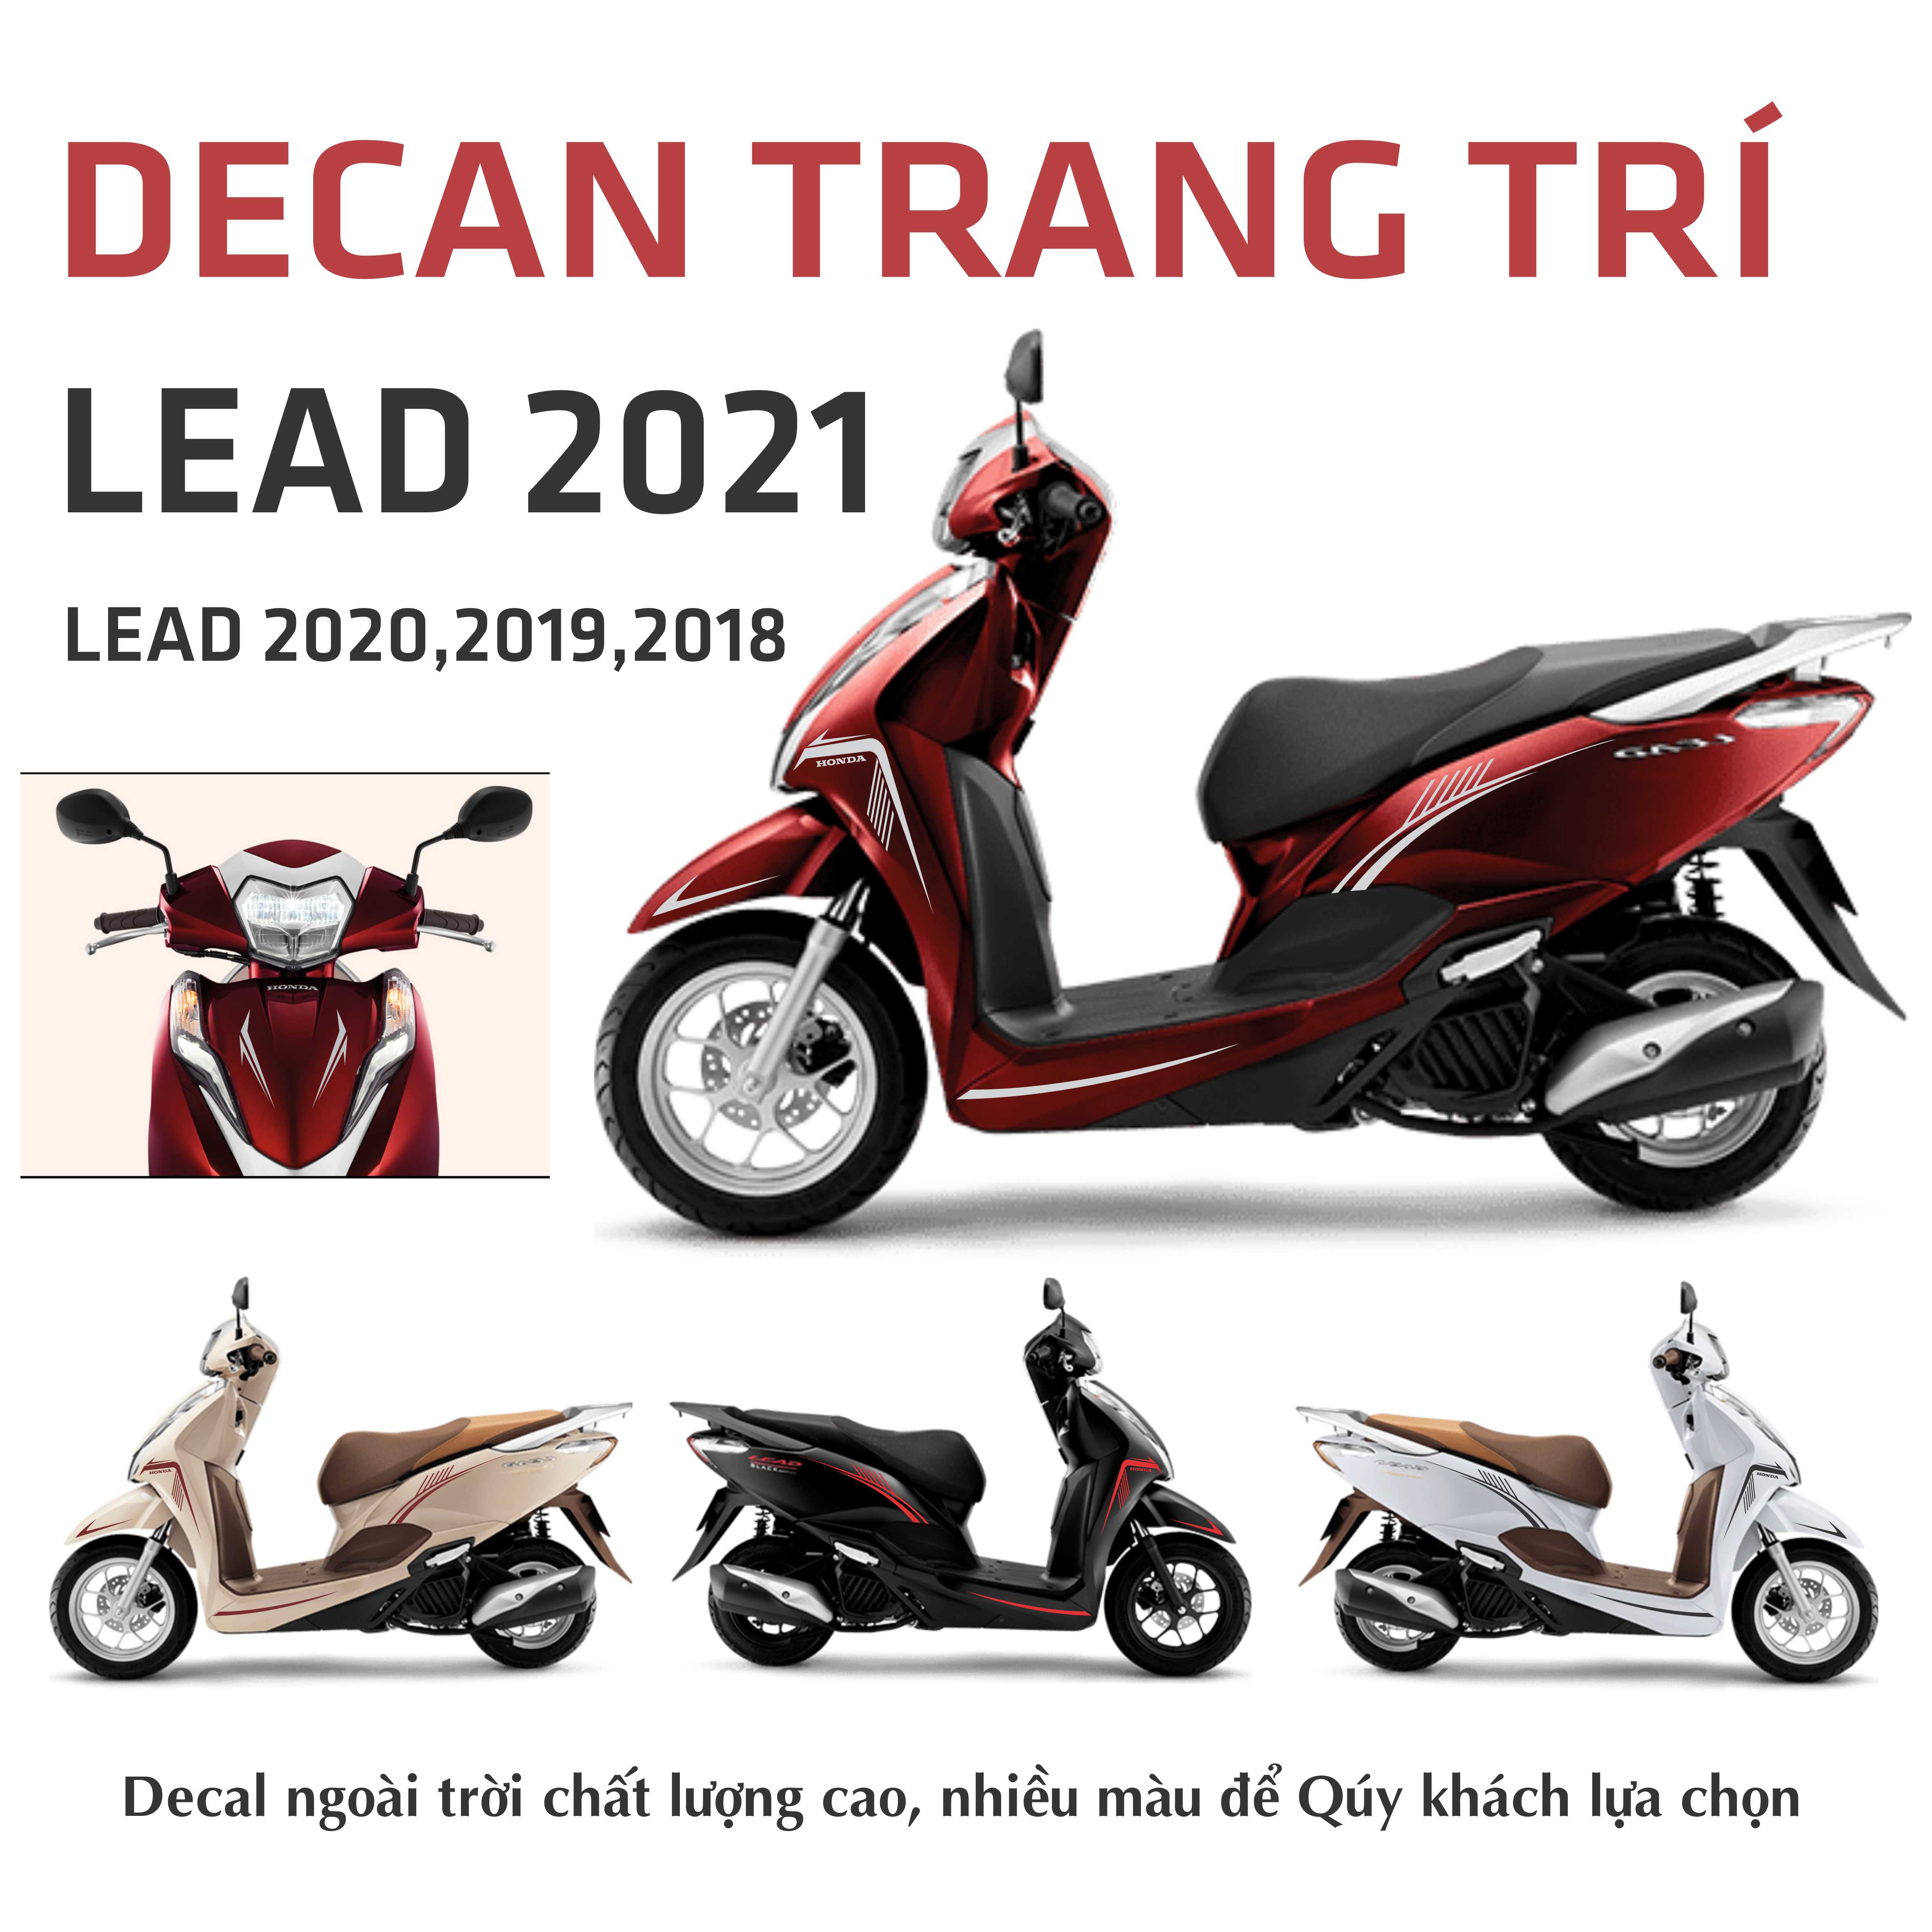 Honda Lead 2021 sẽ được ra mắt tại Thái Lan  Viết bởi MyTranMy